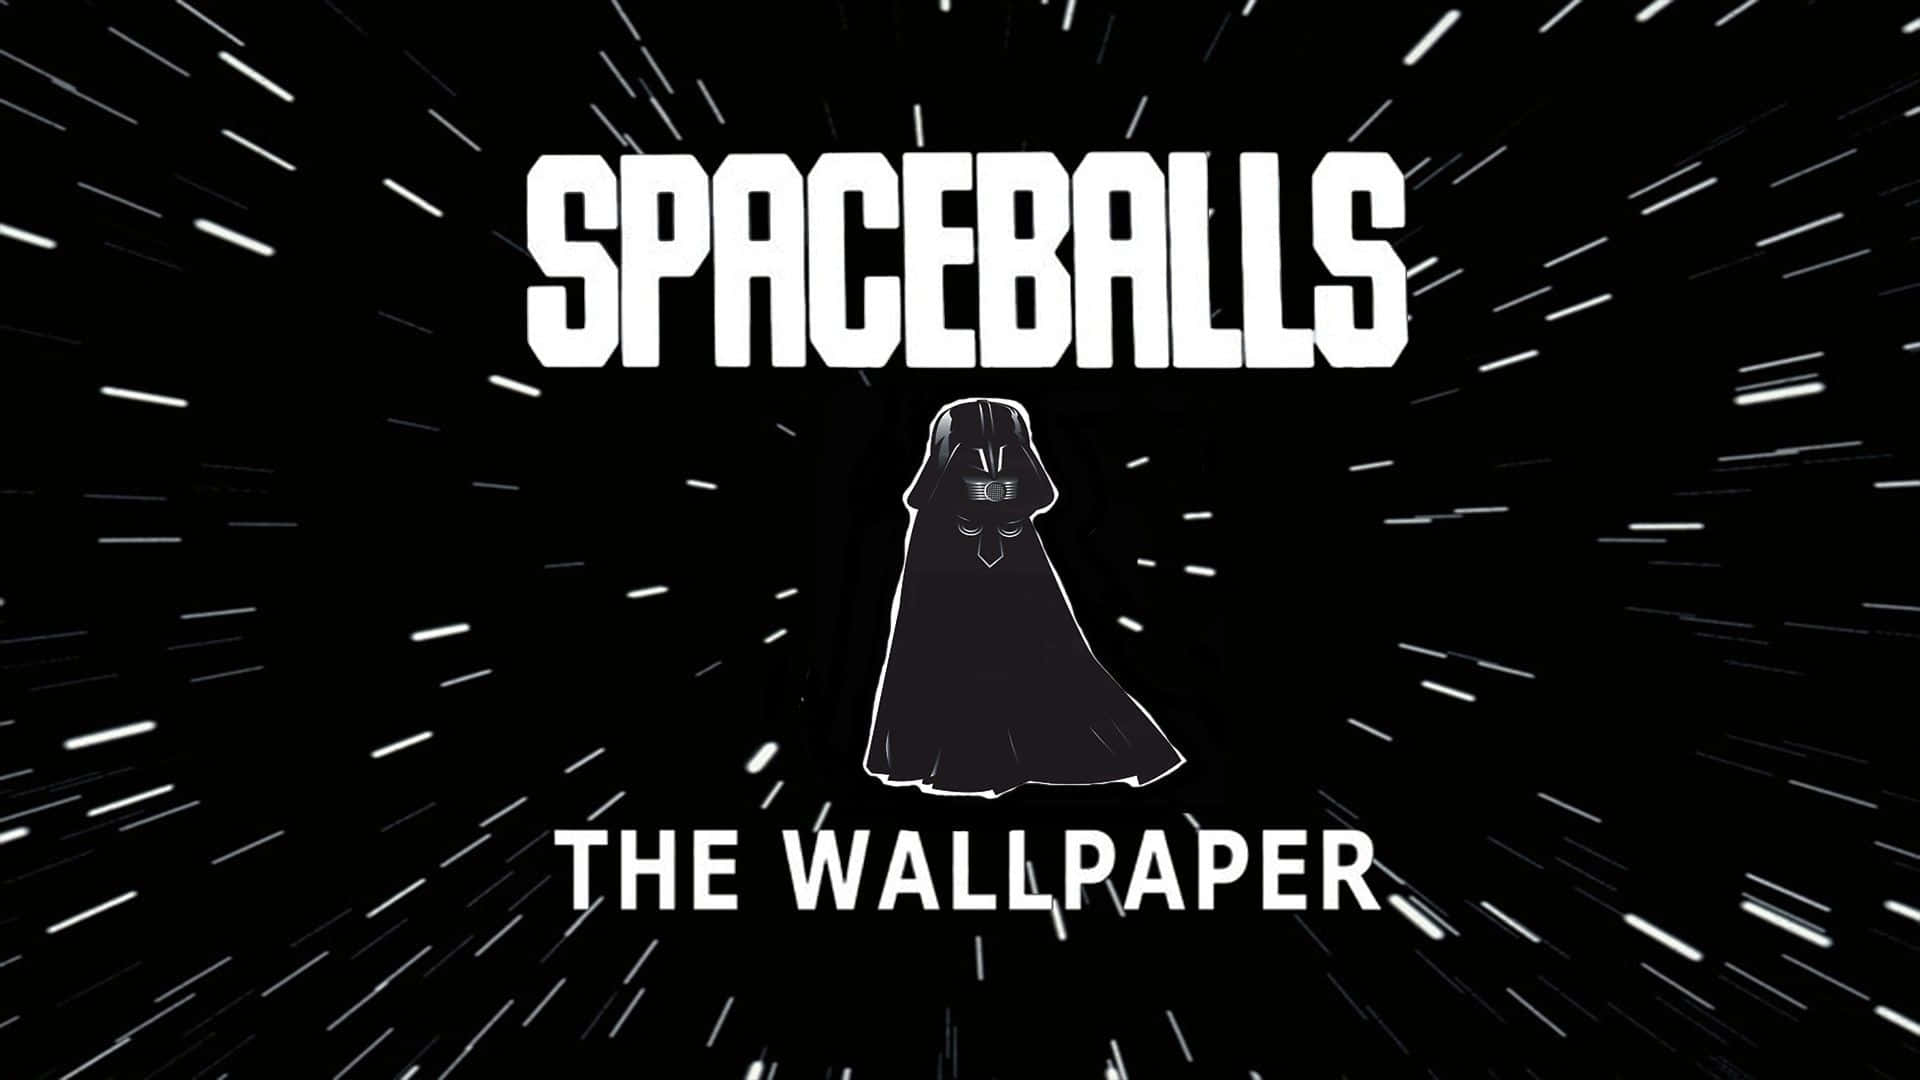 Spaceballs Star Wars Parody Background